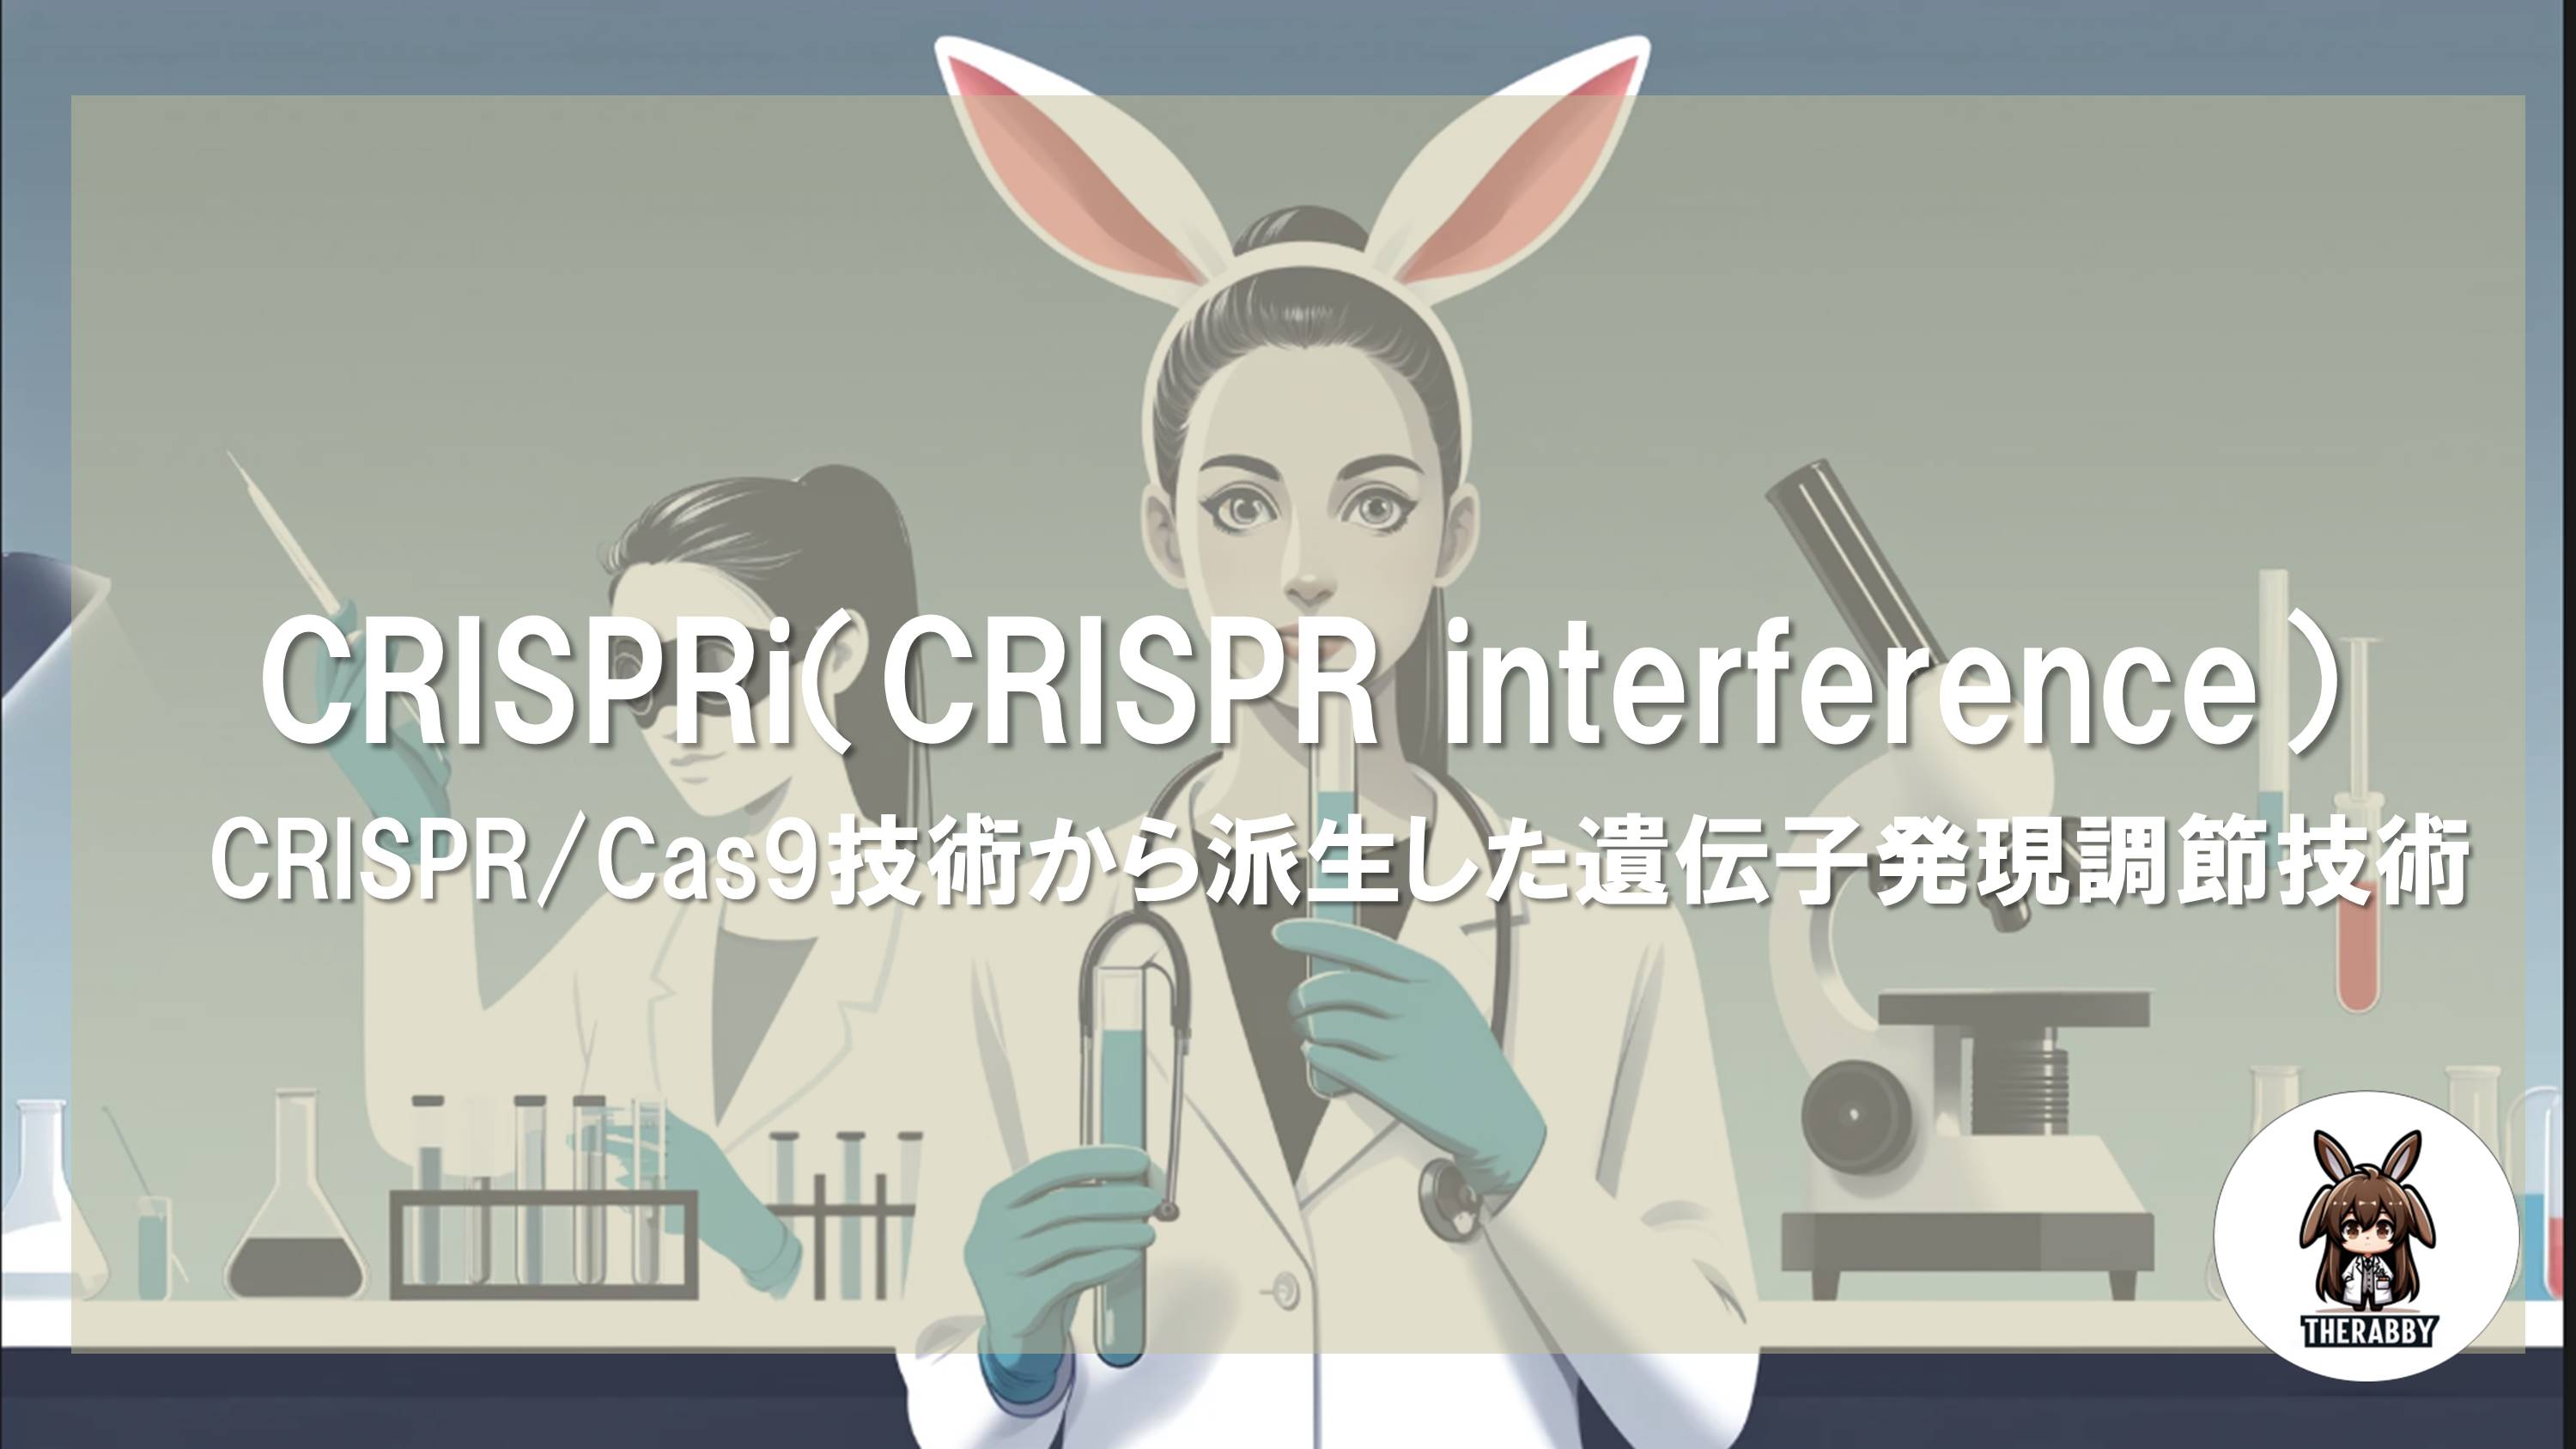 CRISPRi（CRISPR interference） - CRISPR/Cas9技術から派生した遺伝子発現調節技術